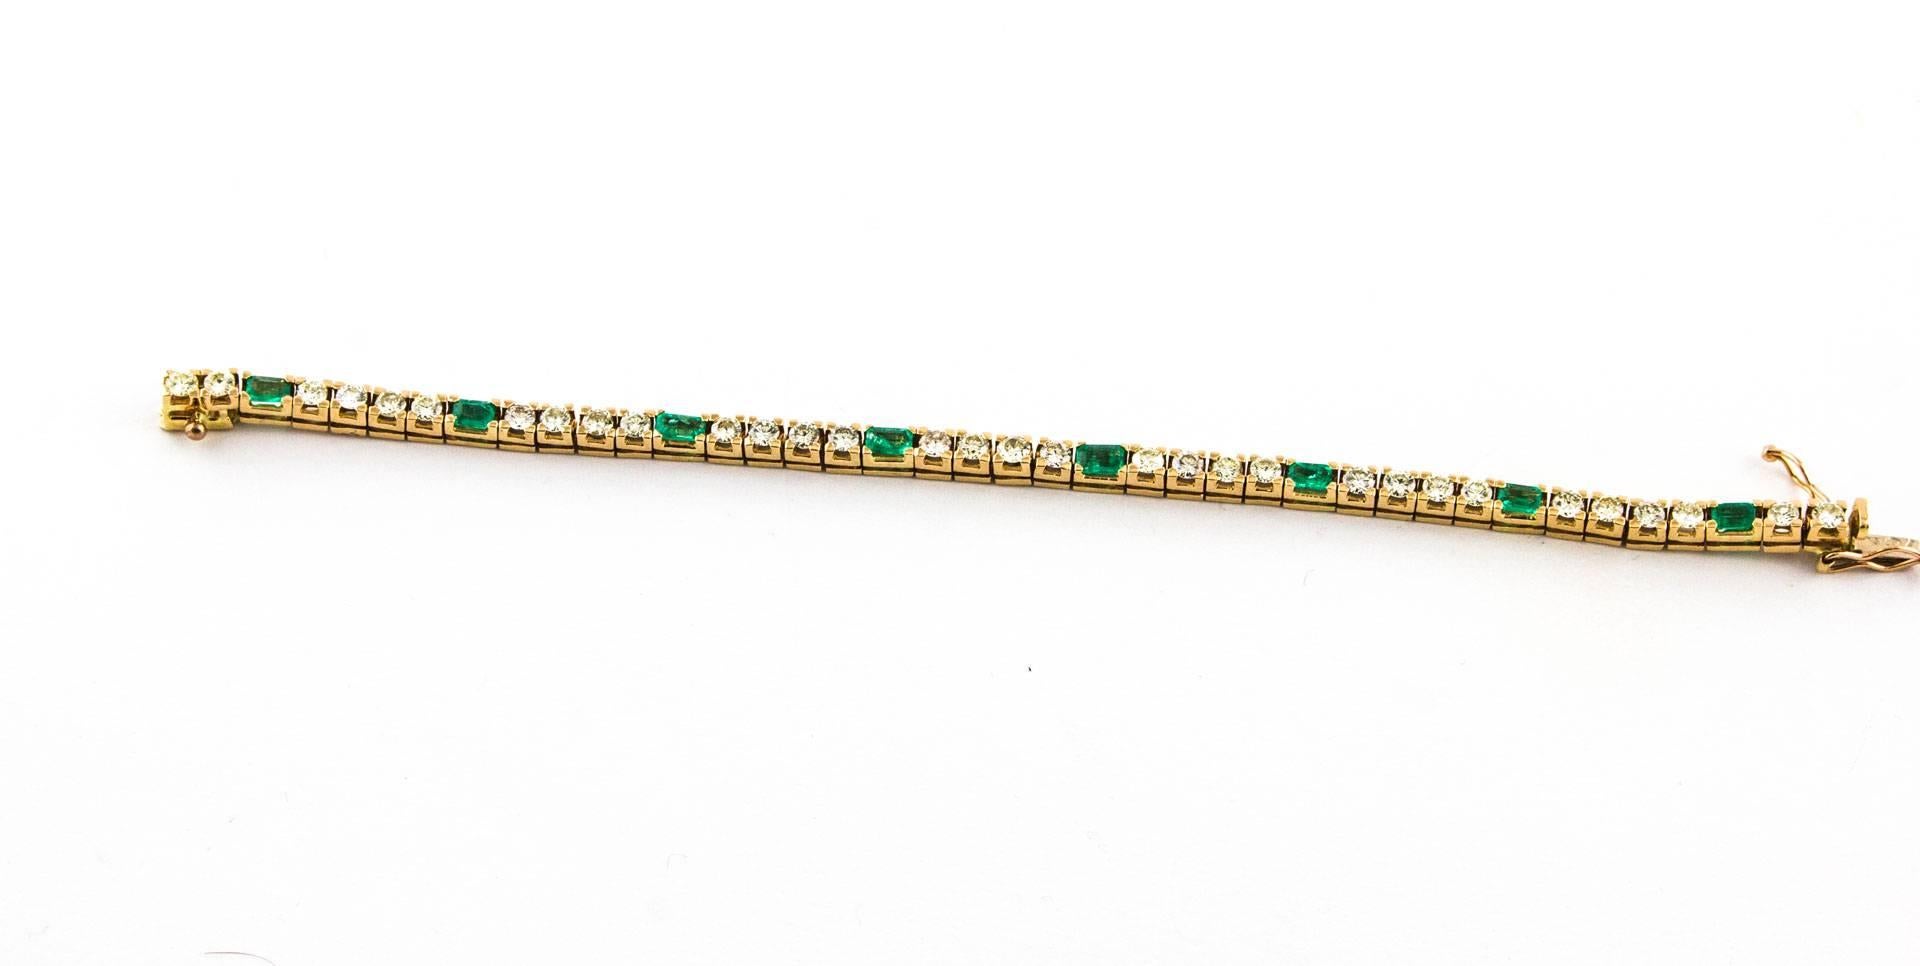 Tennis Bracelet in Rose Gold 14kt, with ct 3,96 Diamonds and ct 1,78 Emeralds
Diamonds ct 3.96
Emeralds ct 1.78
Total Weight 16 gr

R.f. ecuf